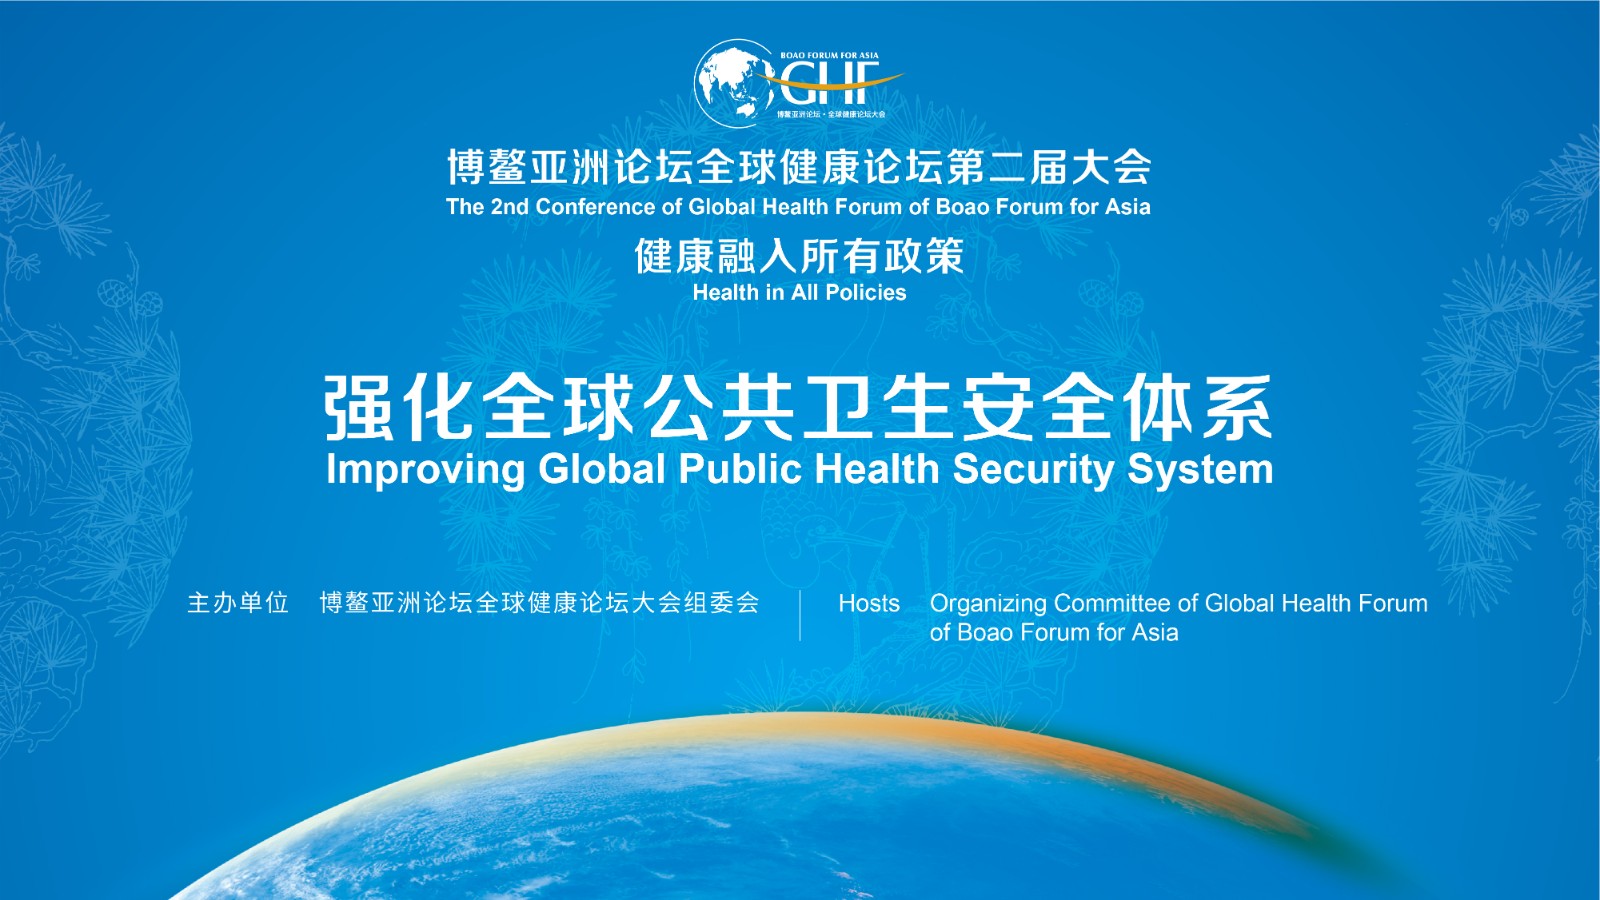 健康融入所有政策—强化全球公共卫生安全体系